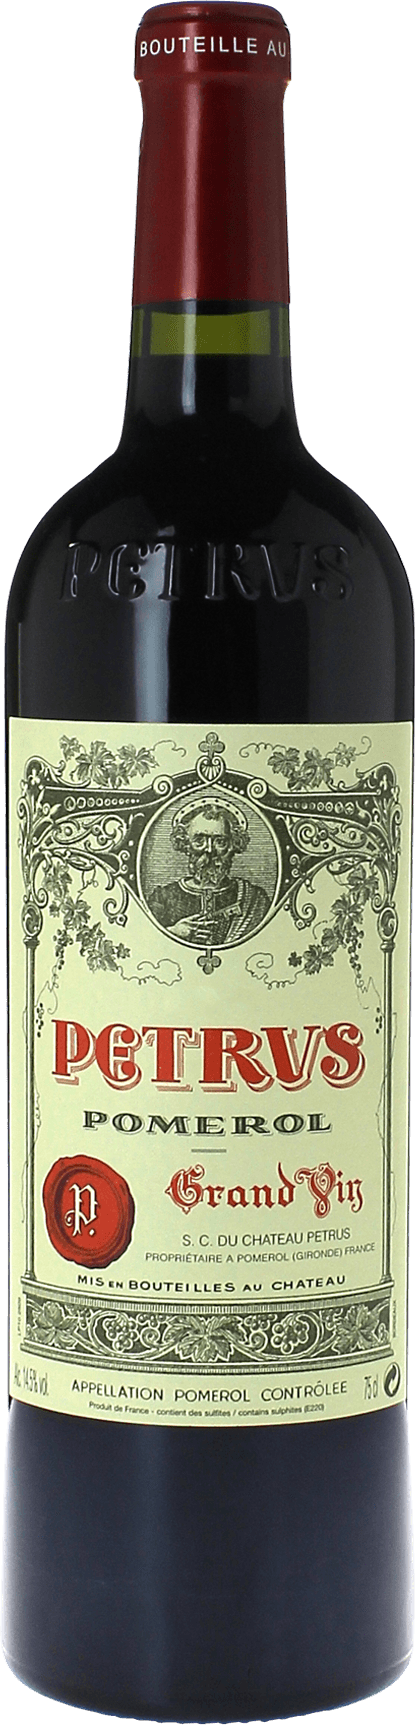 Petrus 1976  Pomerol, Bordeaux rouge